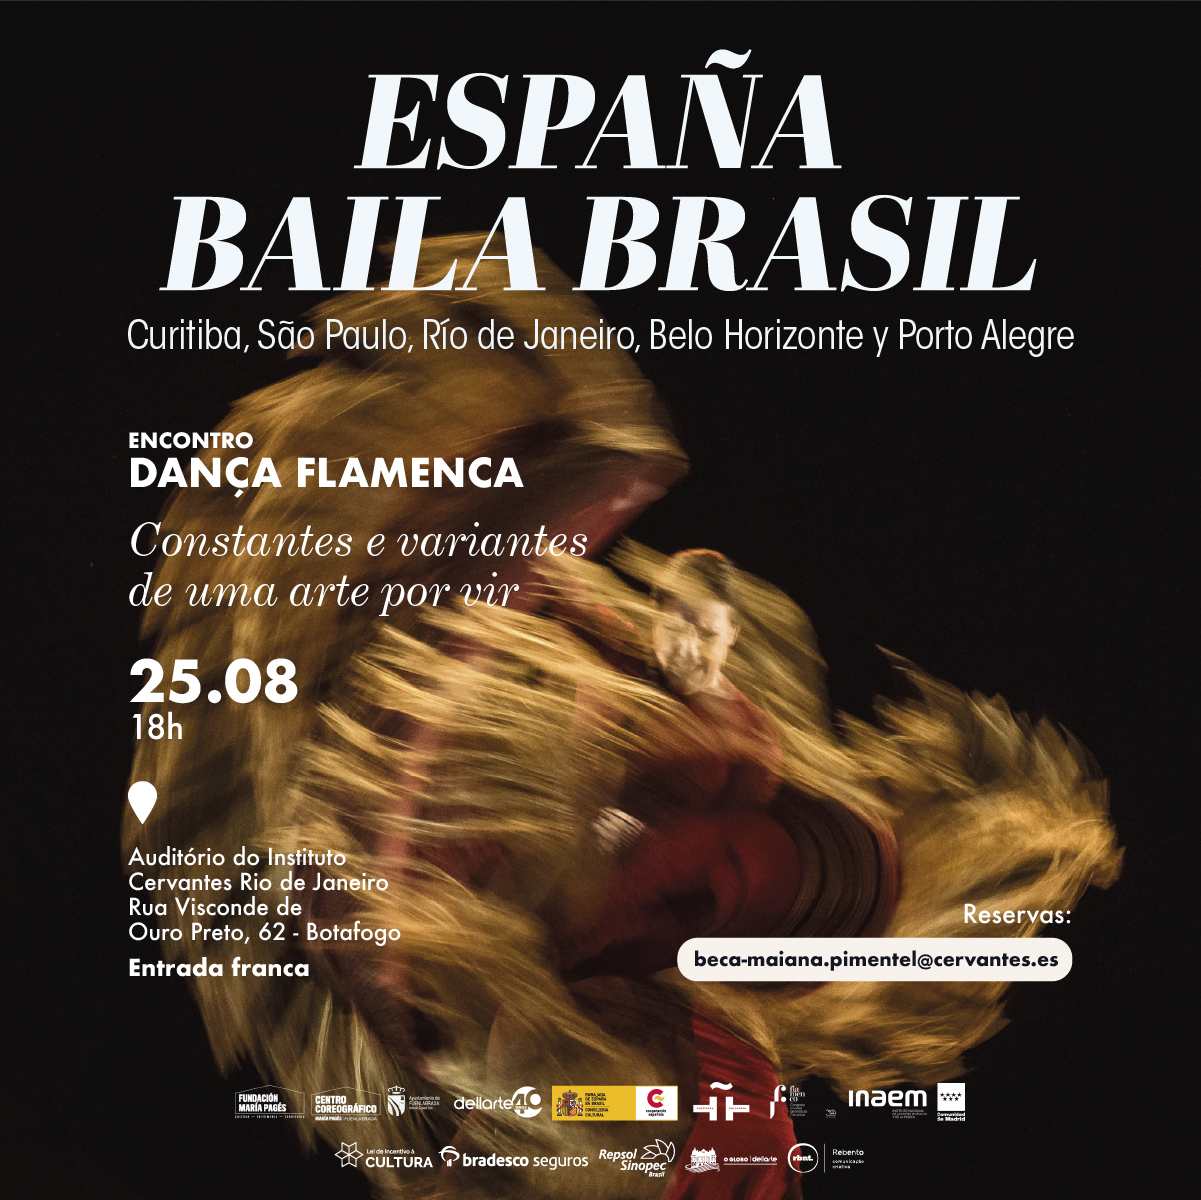 Encontro Dança Flamenca. Constantes e variantes de uma arte por vir